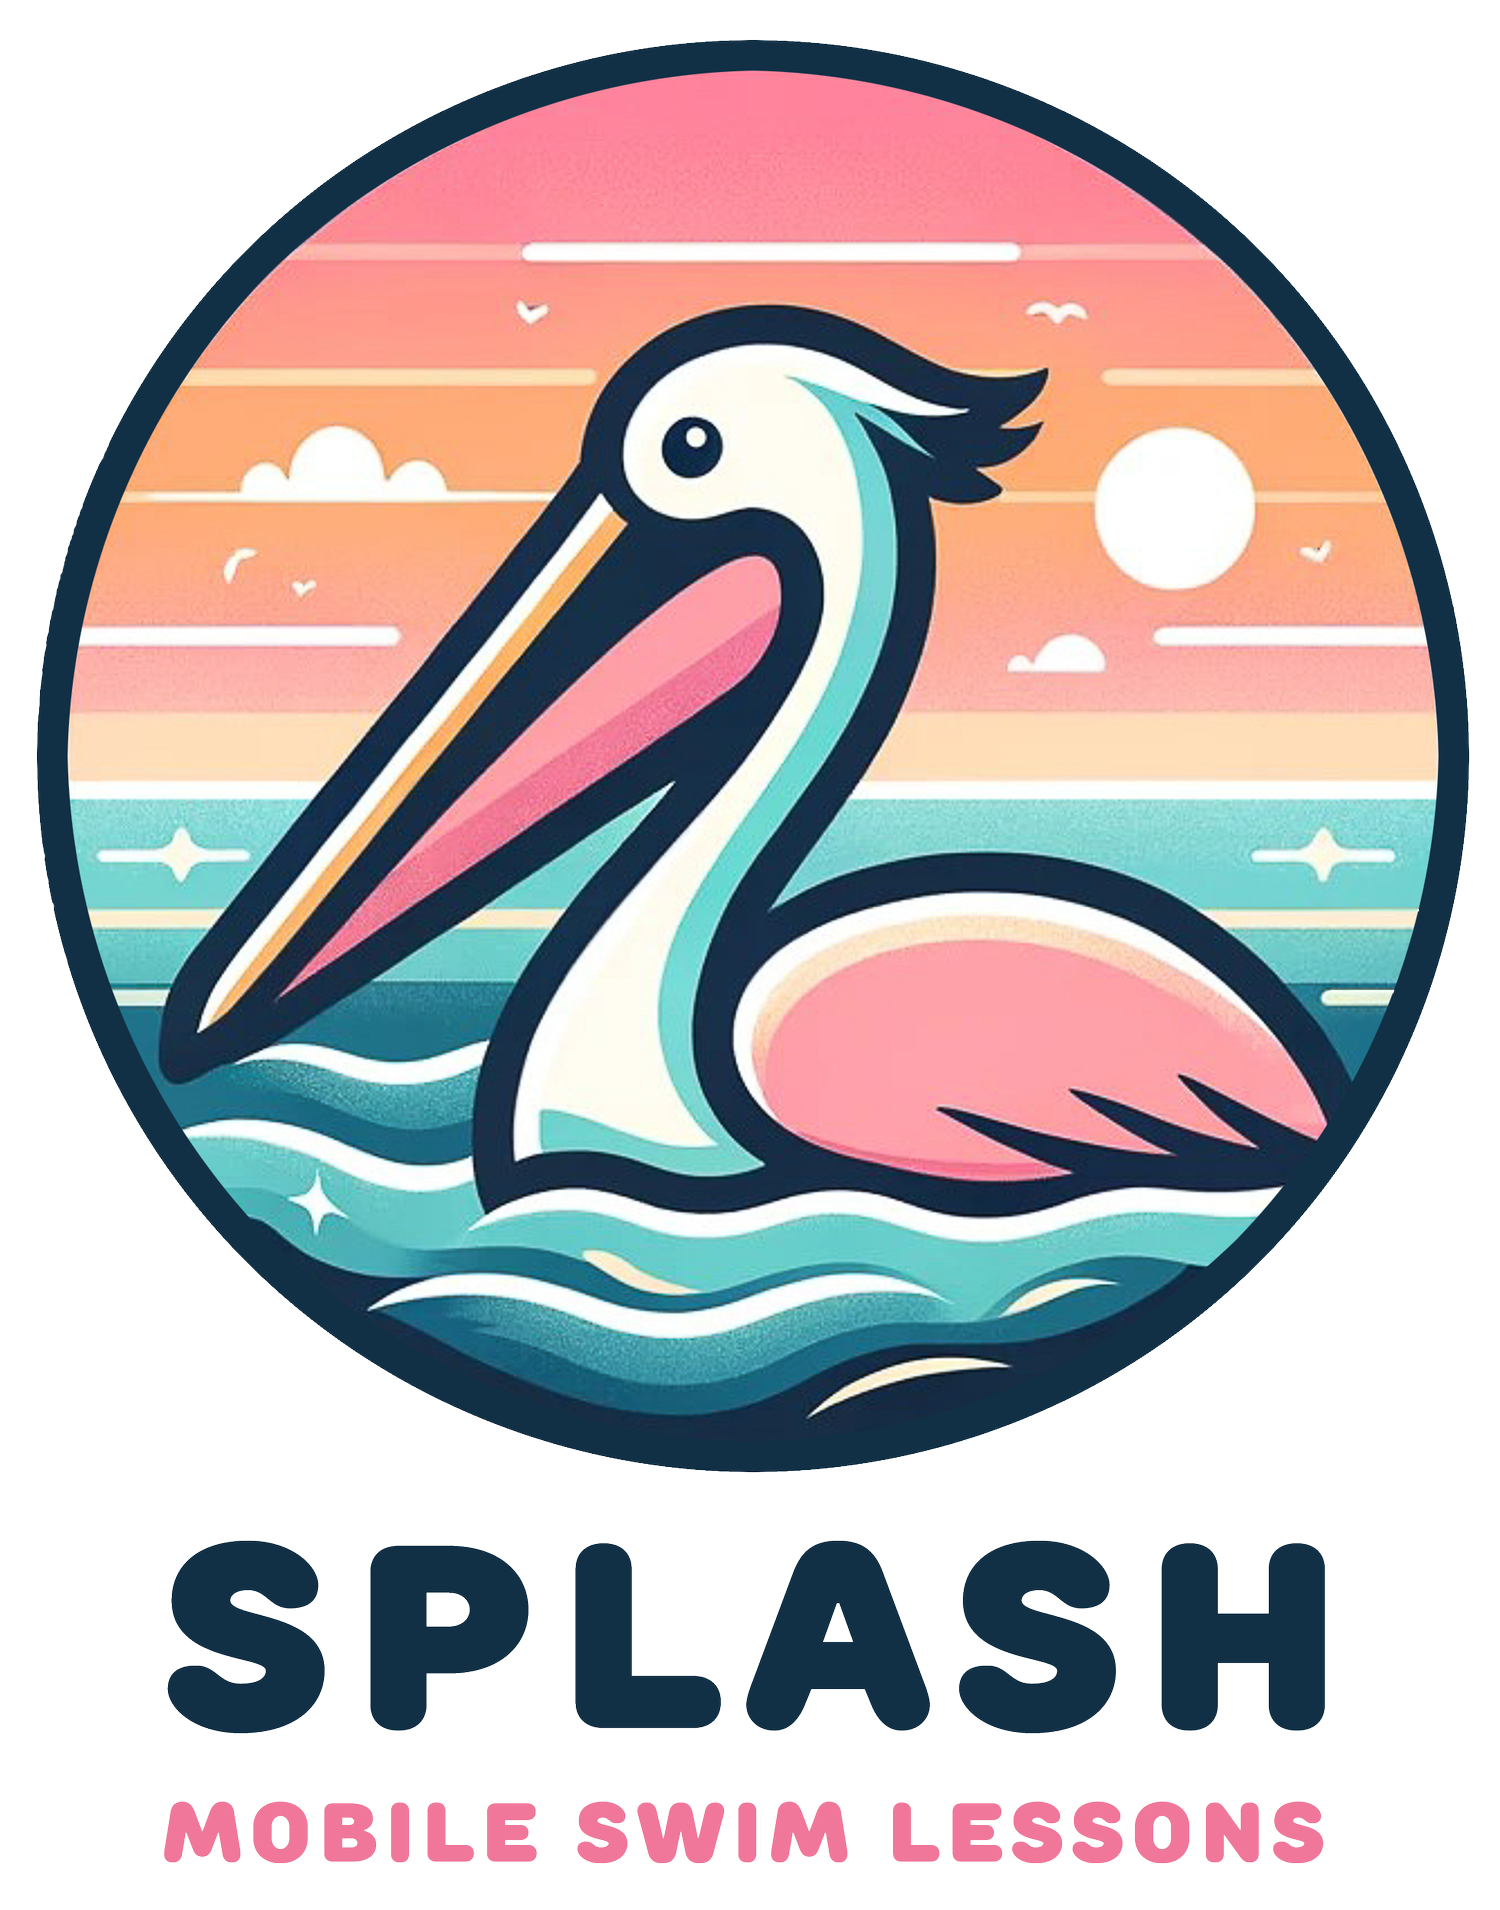 Splash Mobile Swim Lessons